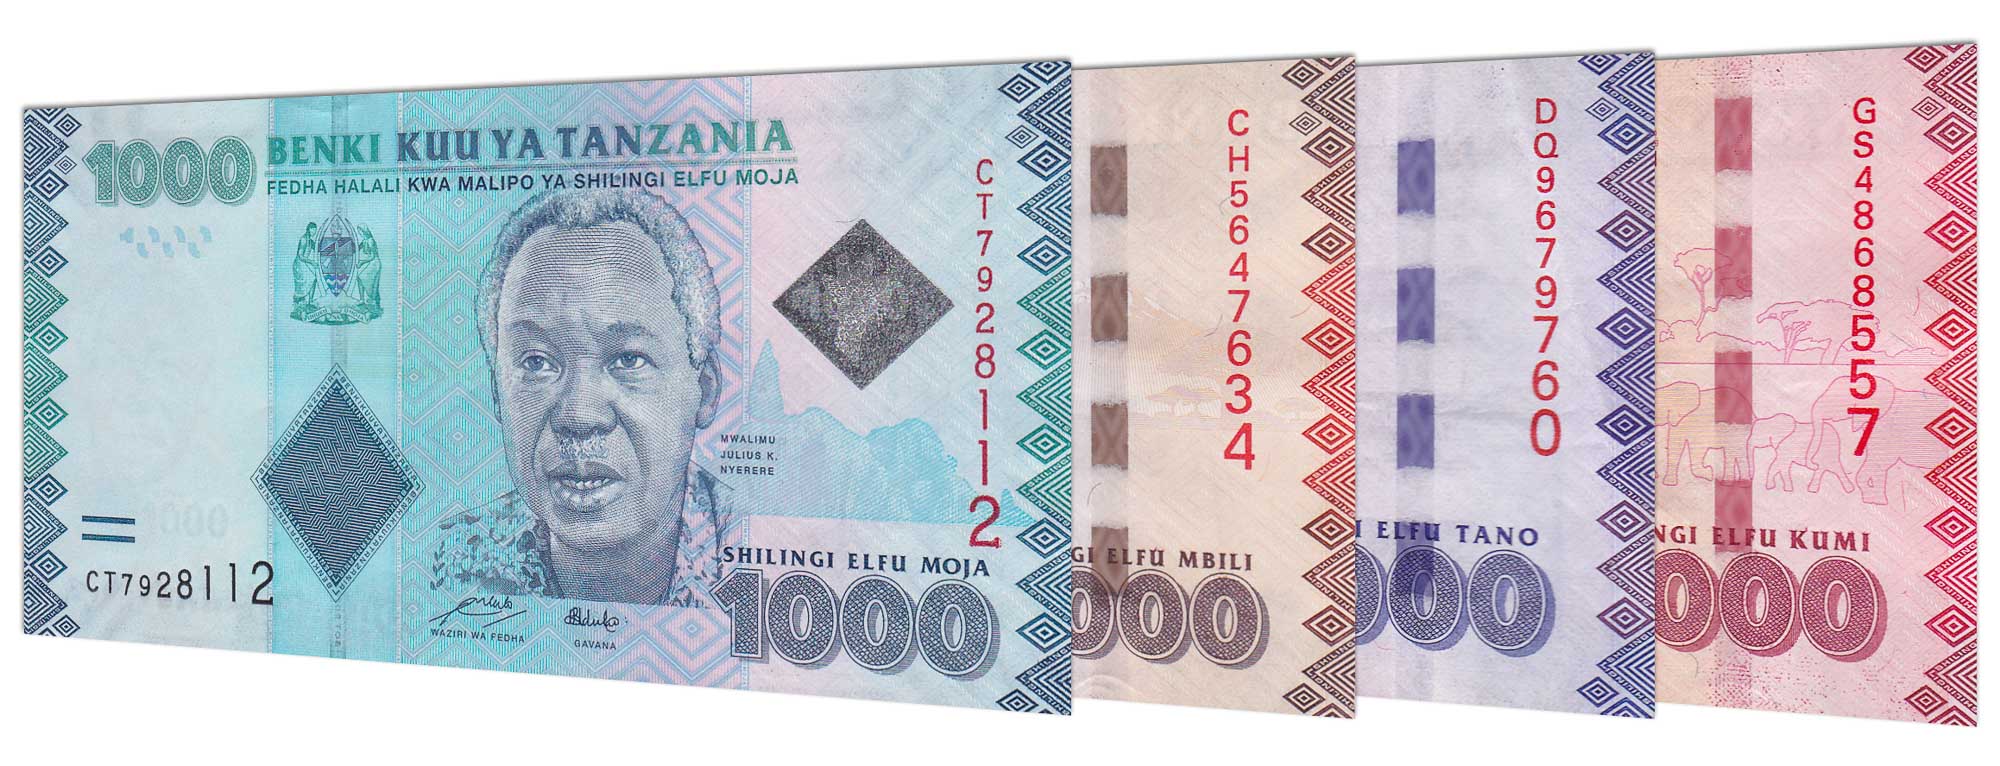 current Tanzanian Shilling banknotes